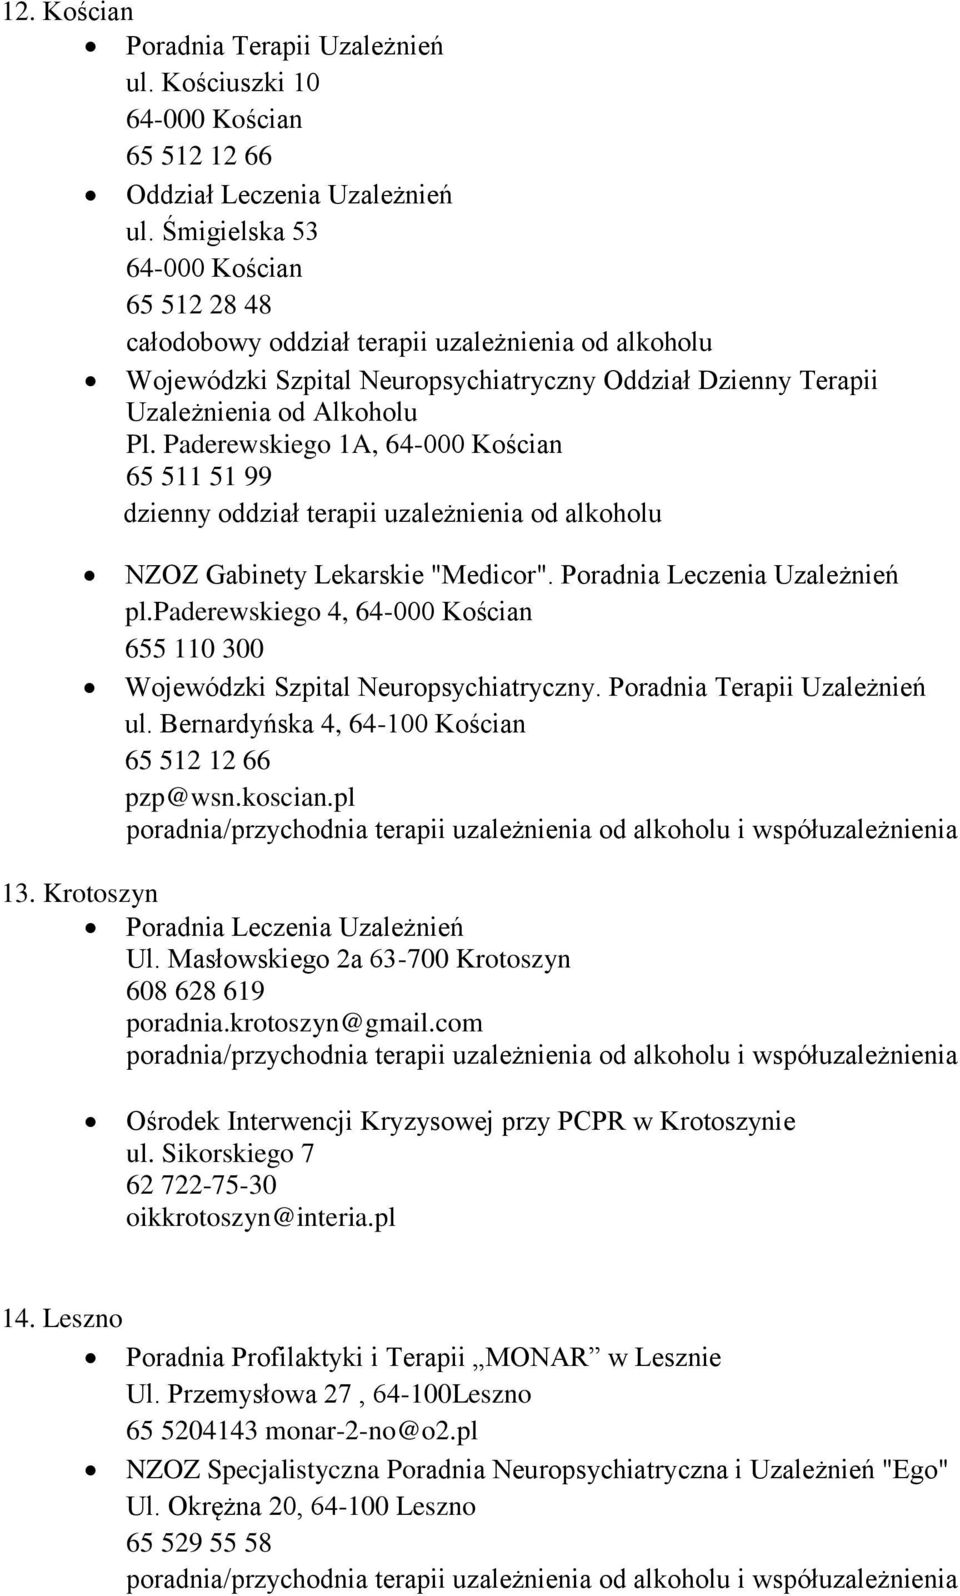 Paderewskiego 1A, 64-000 Kościan 65 511 51 99 dzienny oddział terapii uzależnienia od alkoholu NZOZ Gabinety Lekarskie "Medicor". pl.